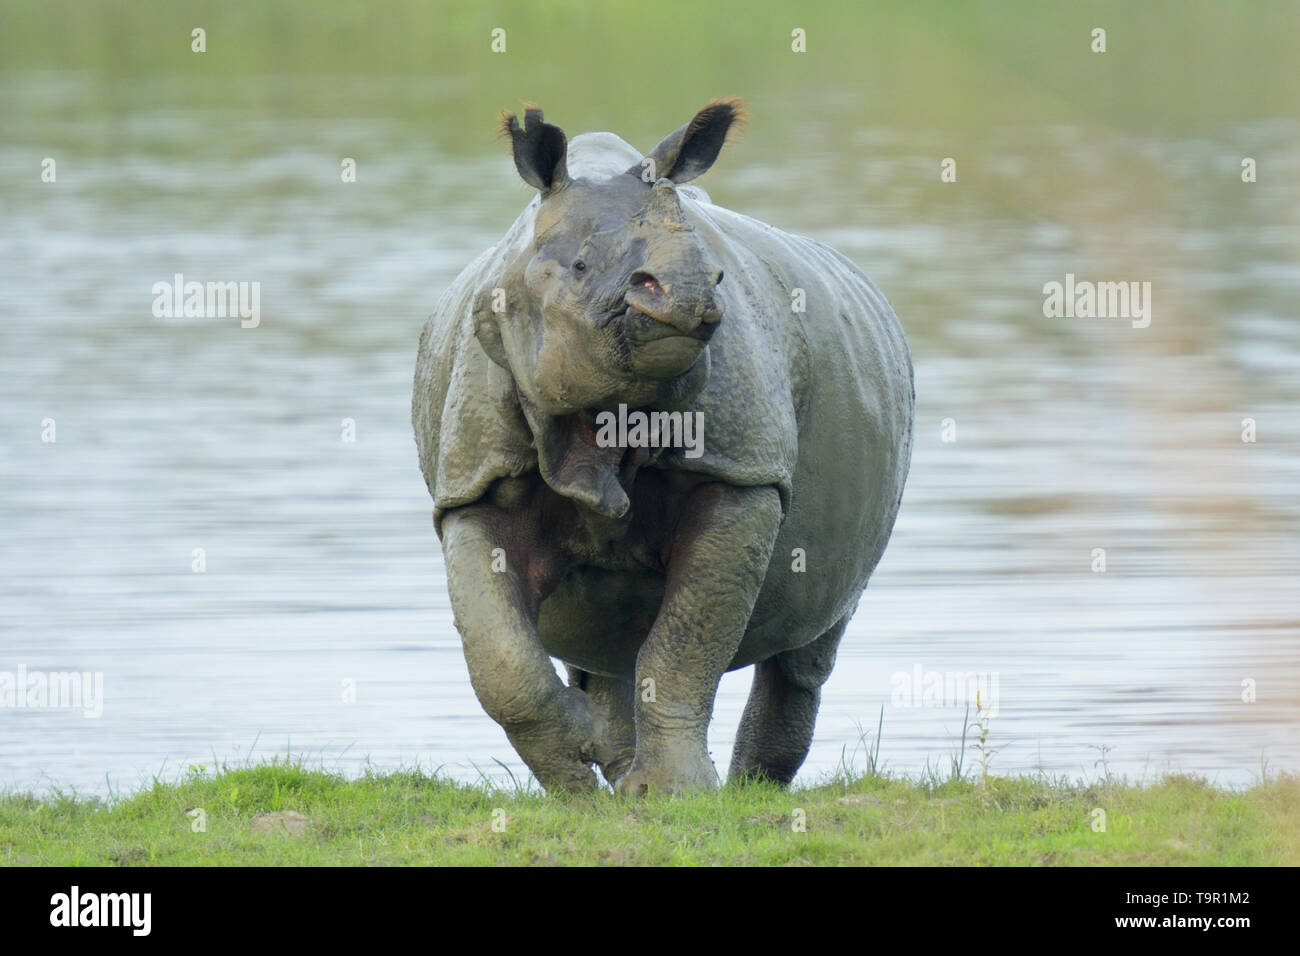 Indian Rhinoceros (Rhinoceros unicornis) emerging from a lake in Kaziranga National Park, India Stock Photo